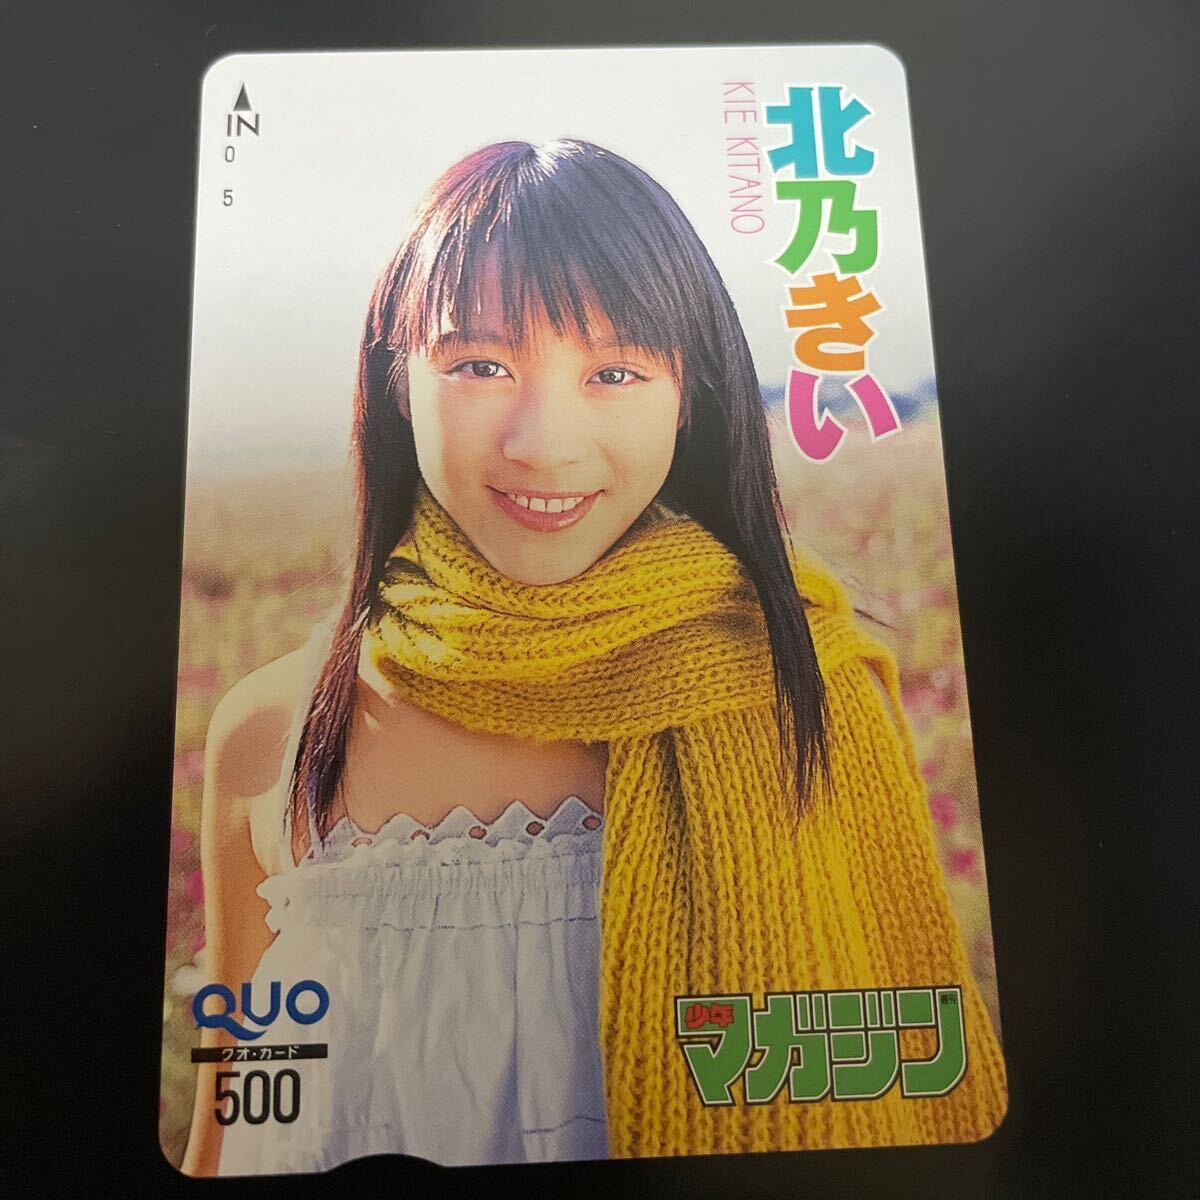  север ... Shonen Magazine QUO card 500 ①